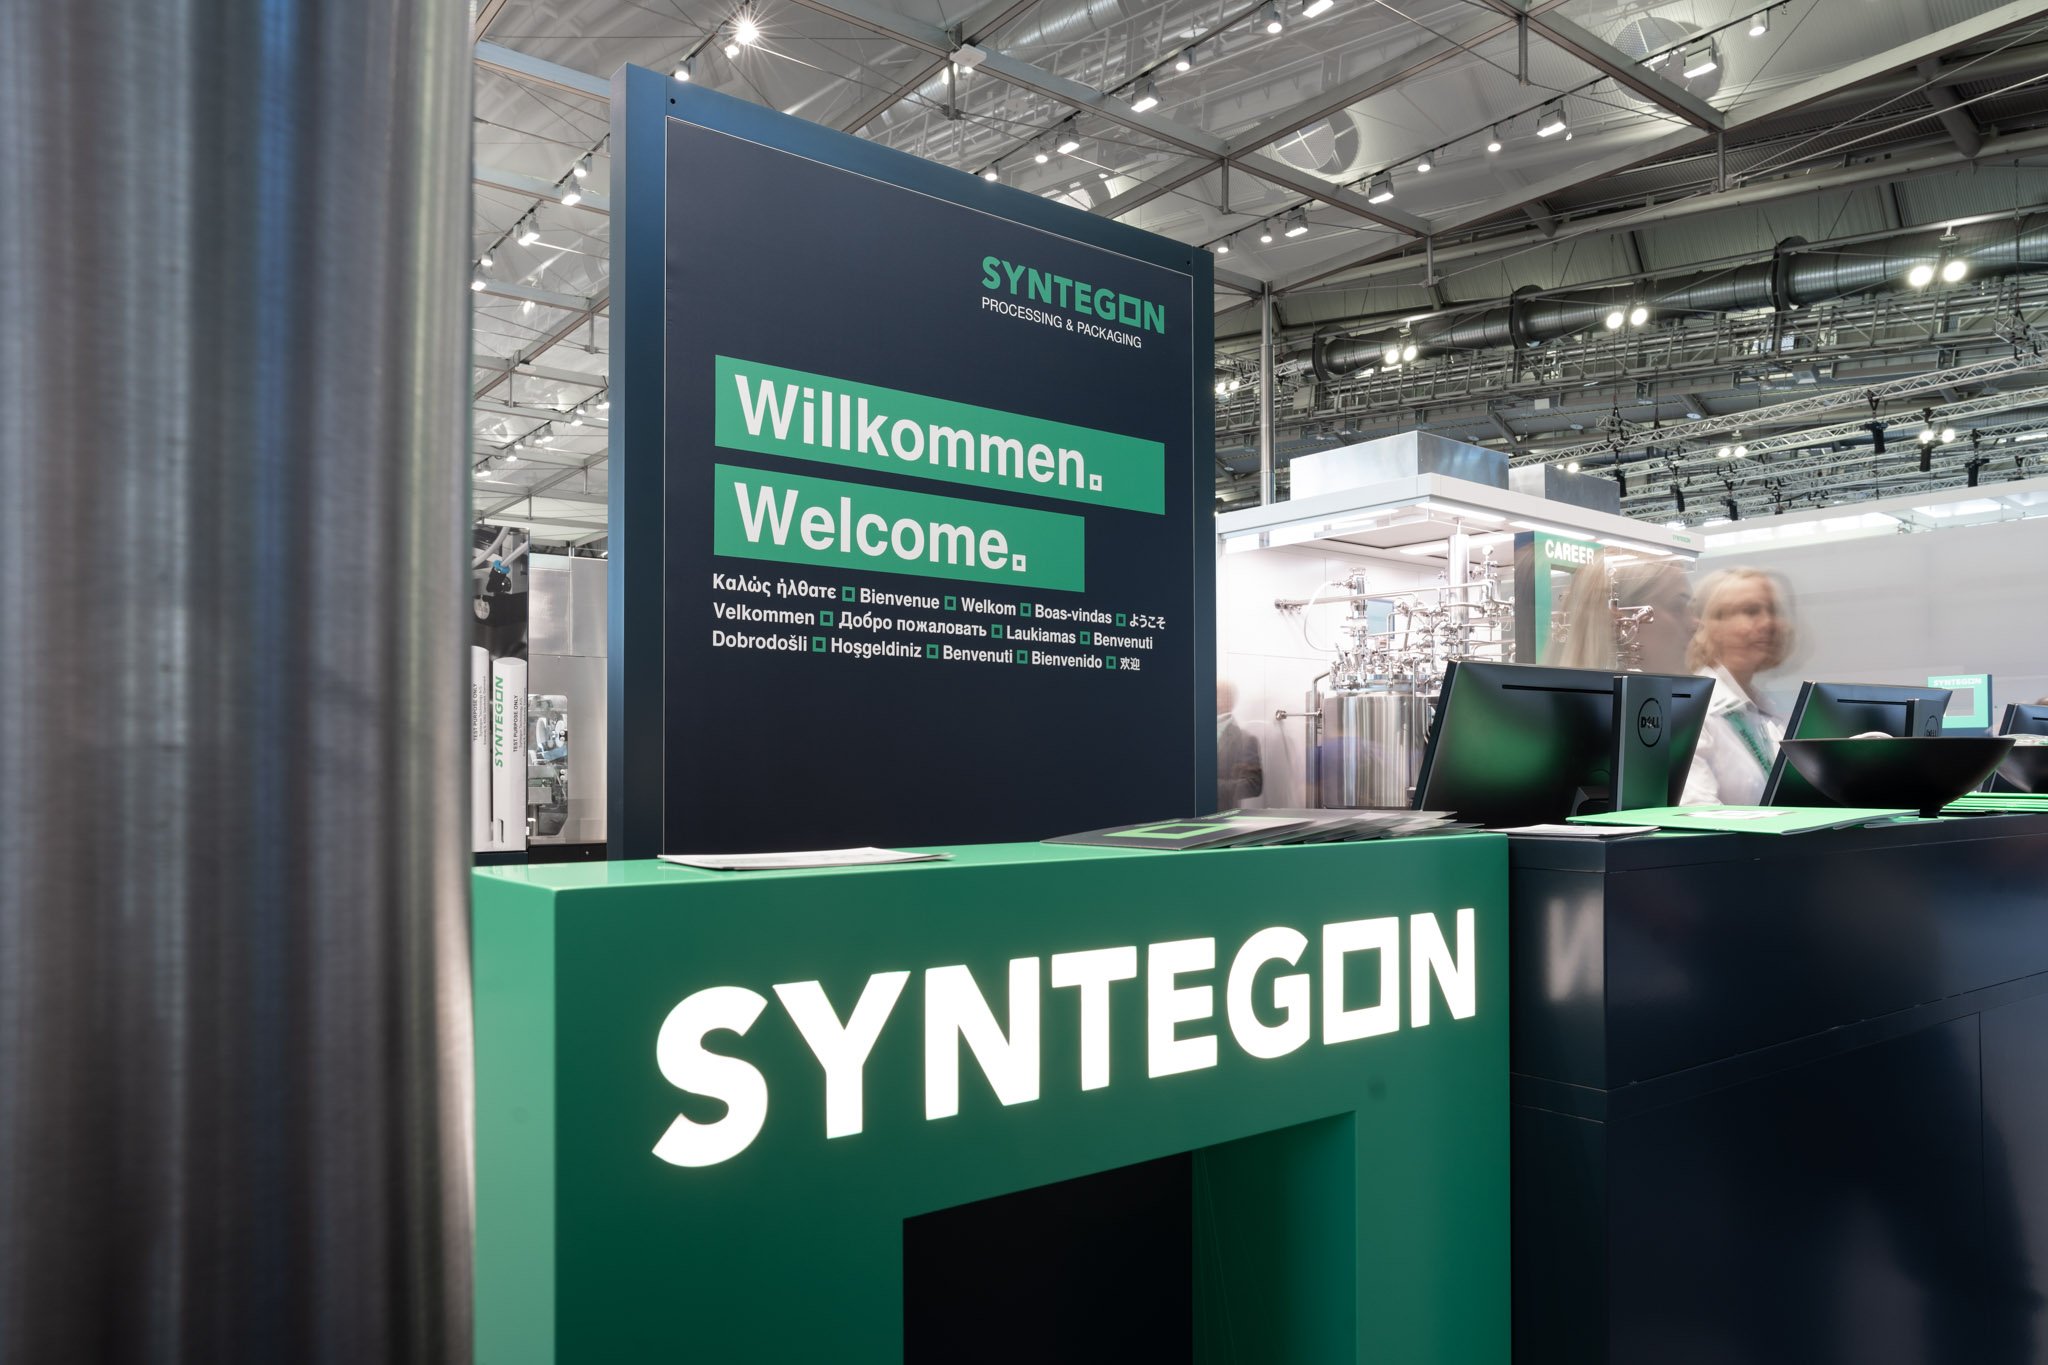 Syntegon präsentiert innovative Lösungen auf der Weltleitmesse für Prozessindustrie in Frankfurt am Main.